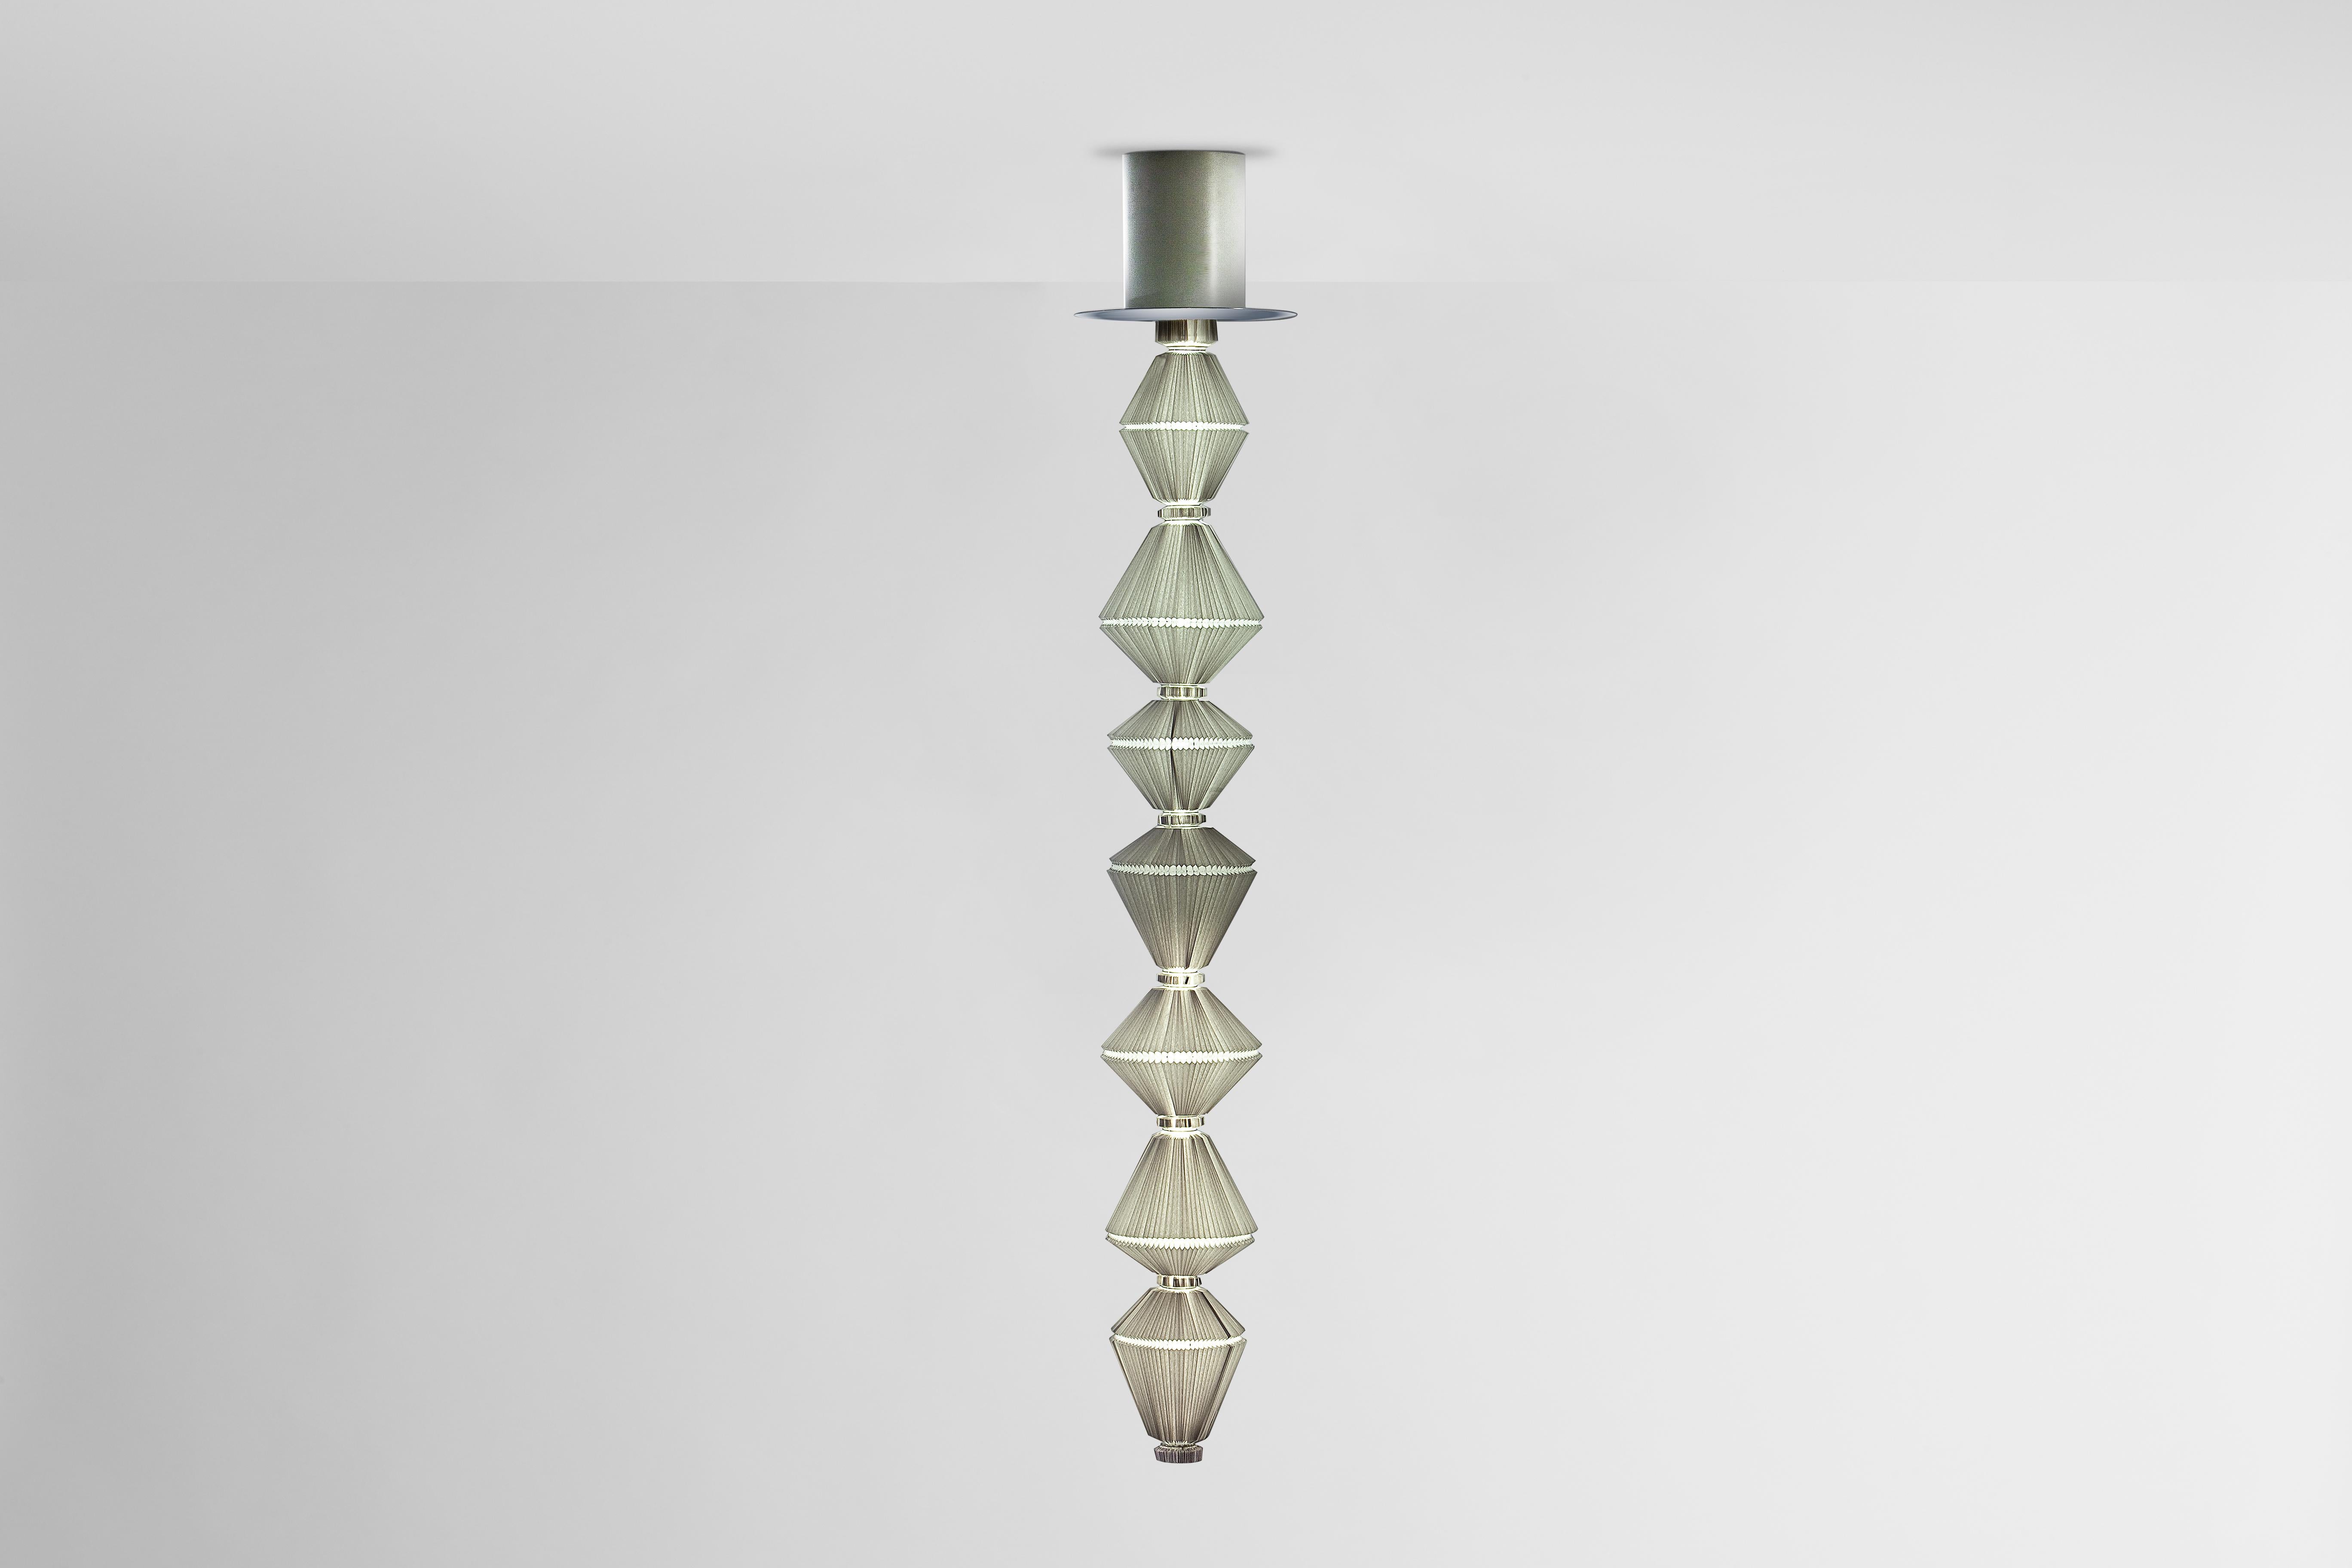 Spanish Oiphorique T GR Suspension Lamp by Atelier Oi for Parachilna For Sale